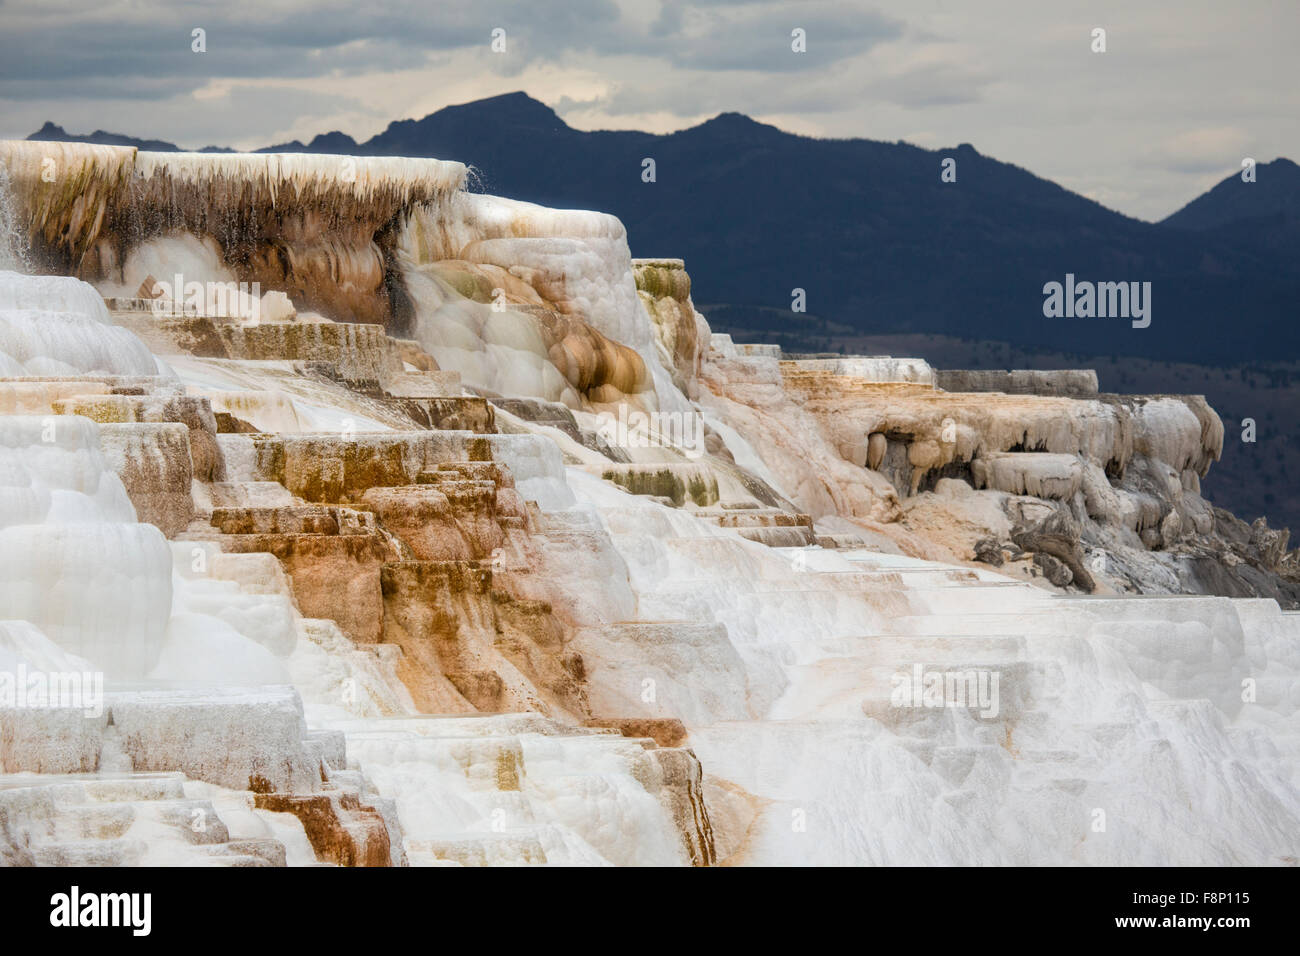 Le flux géothermique de chaud, l'eau riche en carbonate, formulaires, en cascade de terrasses en travertin orange foncé, avec des montagnes en arrière-plan Banque D'Images